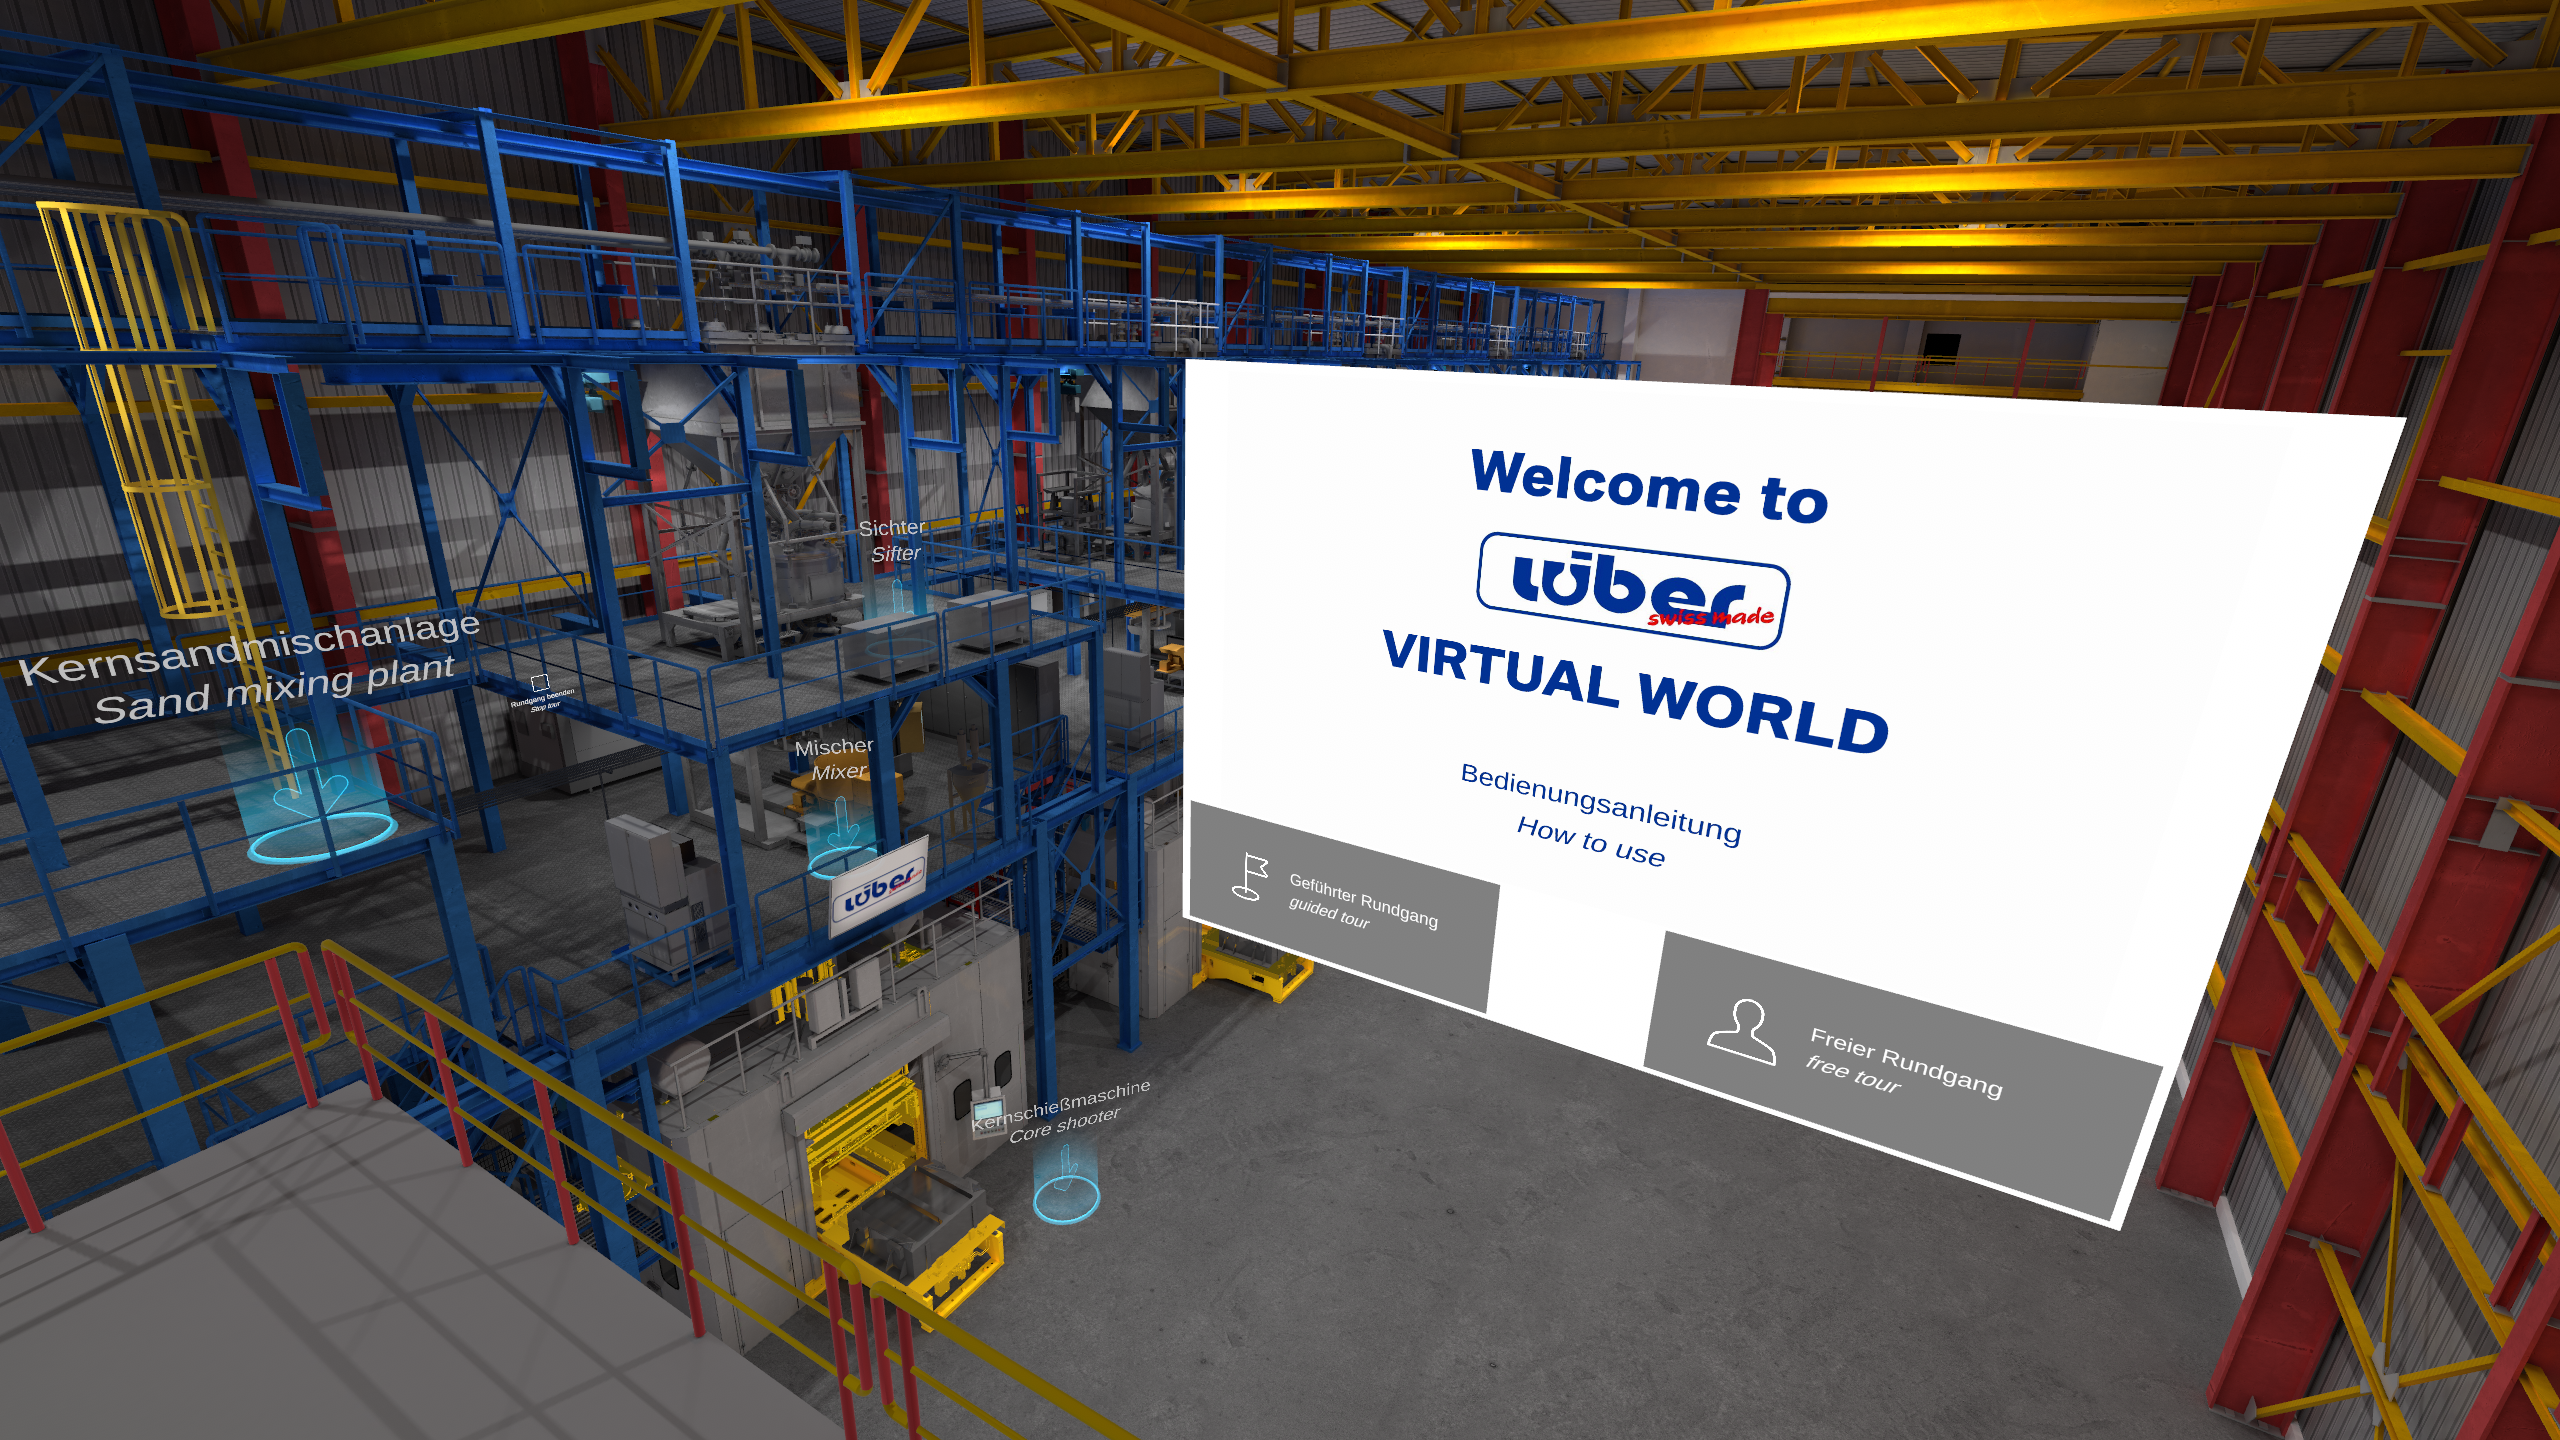 Virtuelle Lagerhallenbesichtigung Lüber Virtual World Welcome Screen